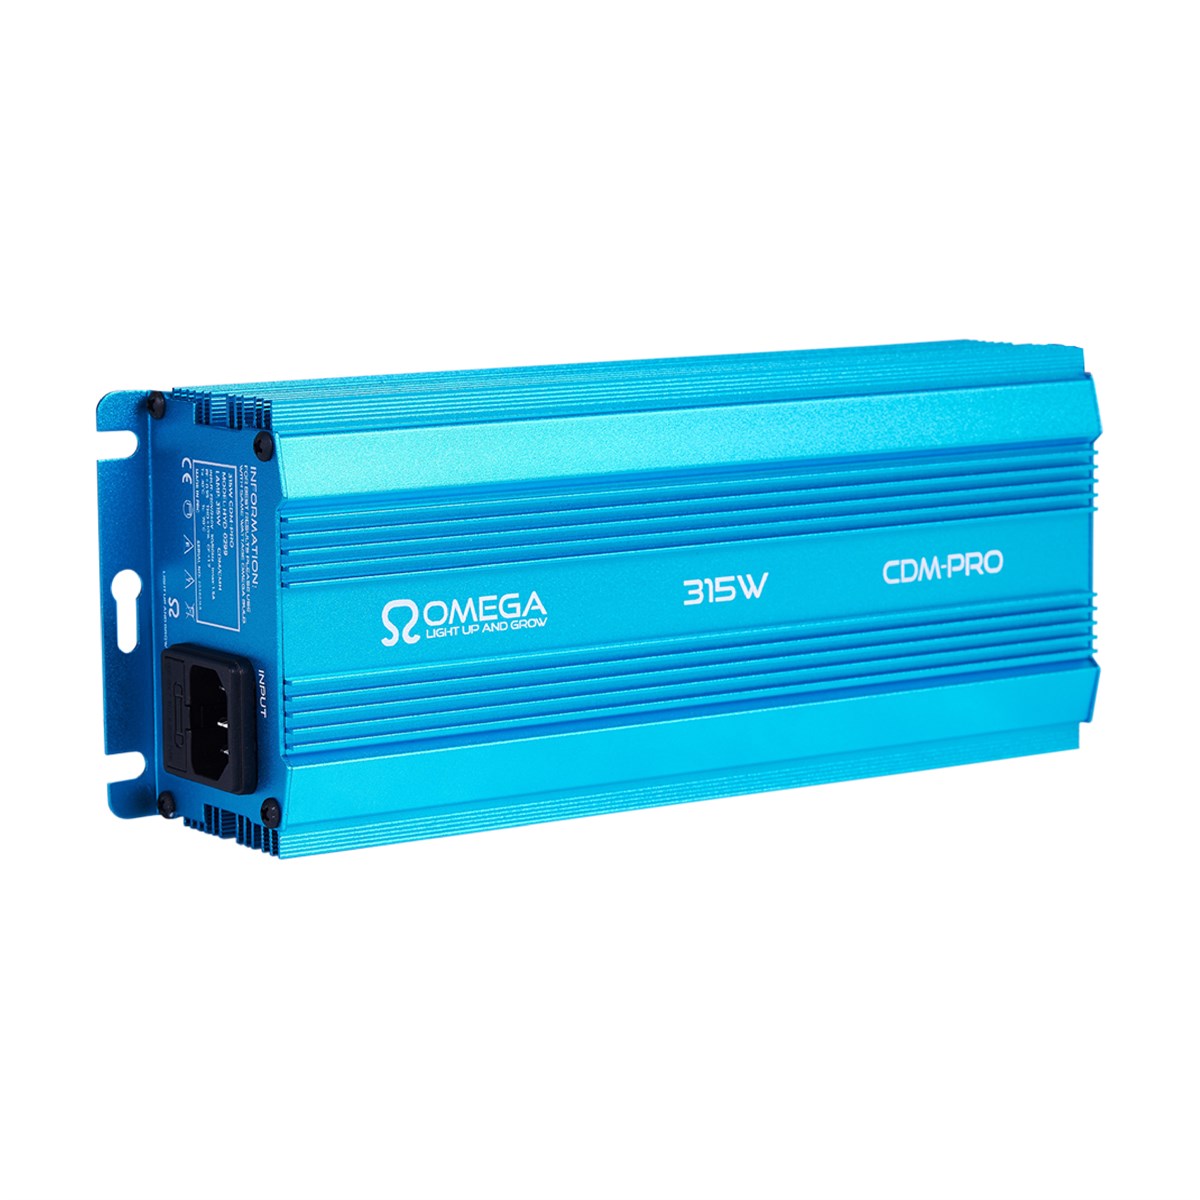 Omega 315W 240V Cdm digitale ballast